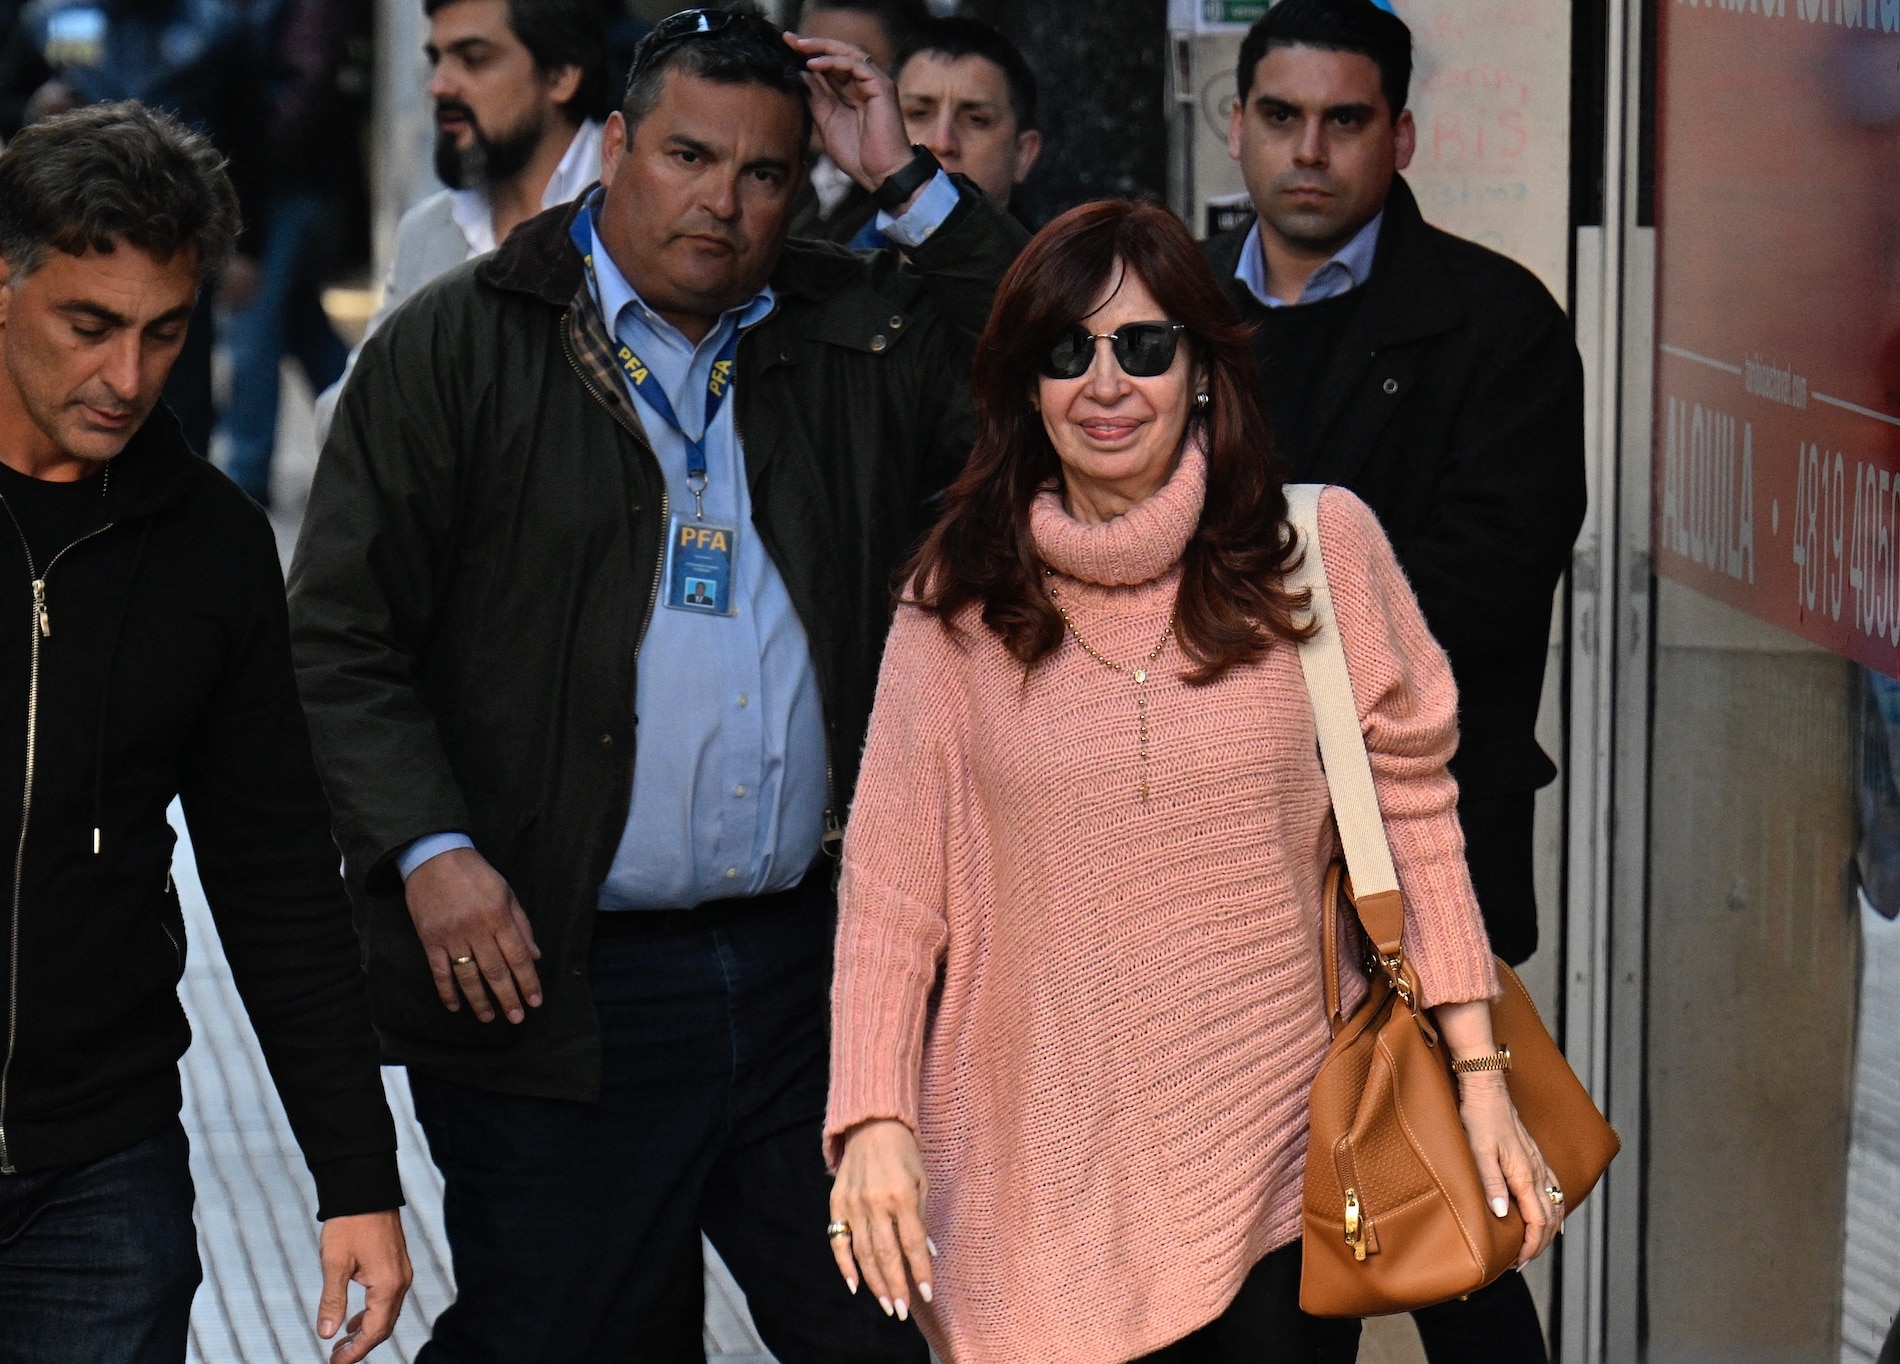 El video del momento cuando el hombre apunta con una pistola a Kirchner en Argentina